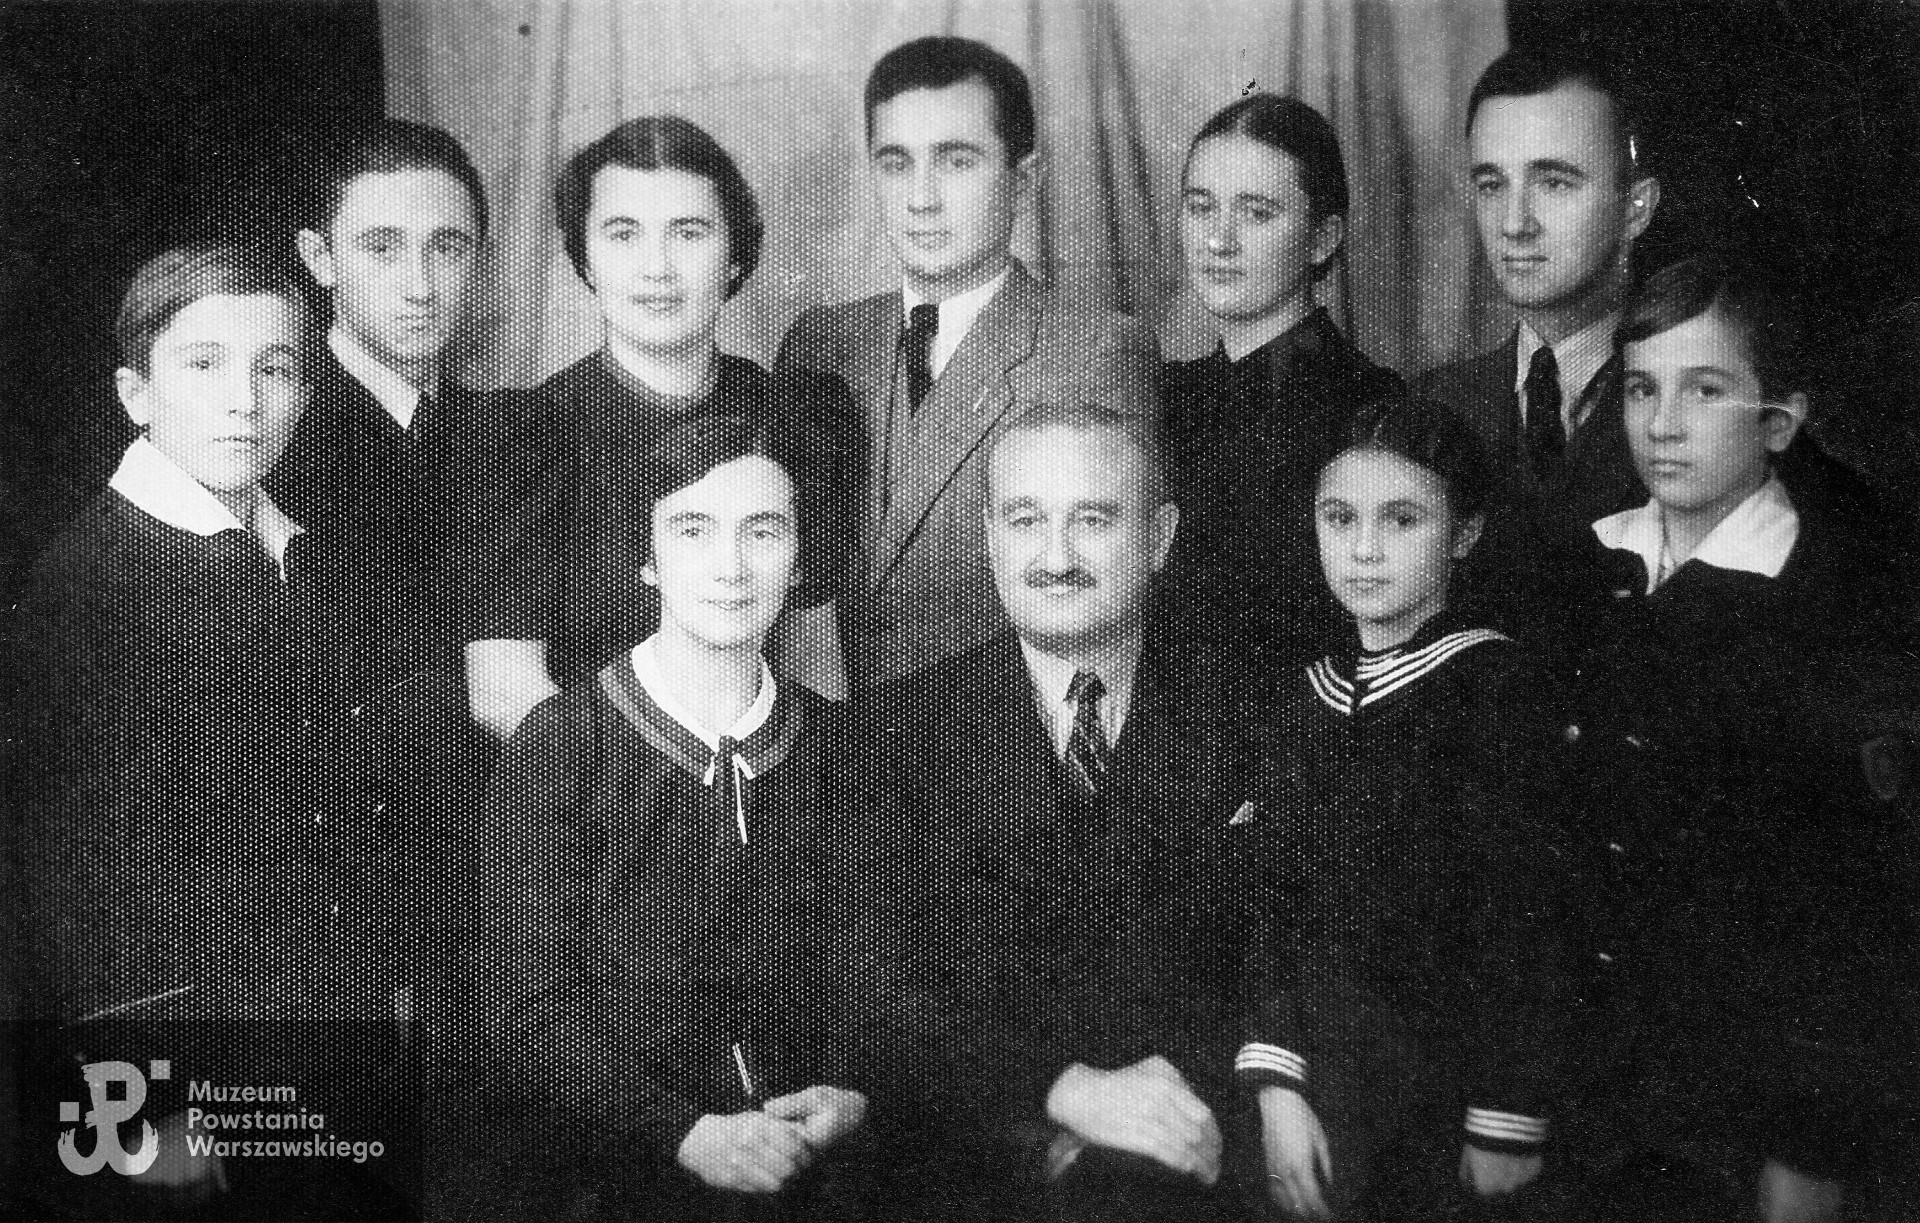 Piotr i Wanda (Pelagia) Gałąskowie z dziećmi - zdjęcie wykonane przewdopodobnie w II połowie lat 30-tych. Fot. ze zbiorów prywatnych, skan udostępniła p. Anna Zamecznik 